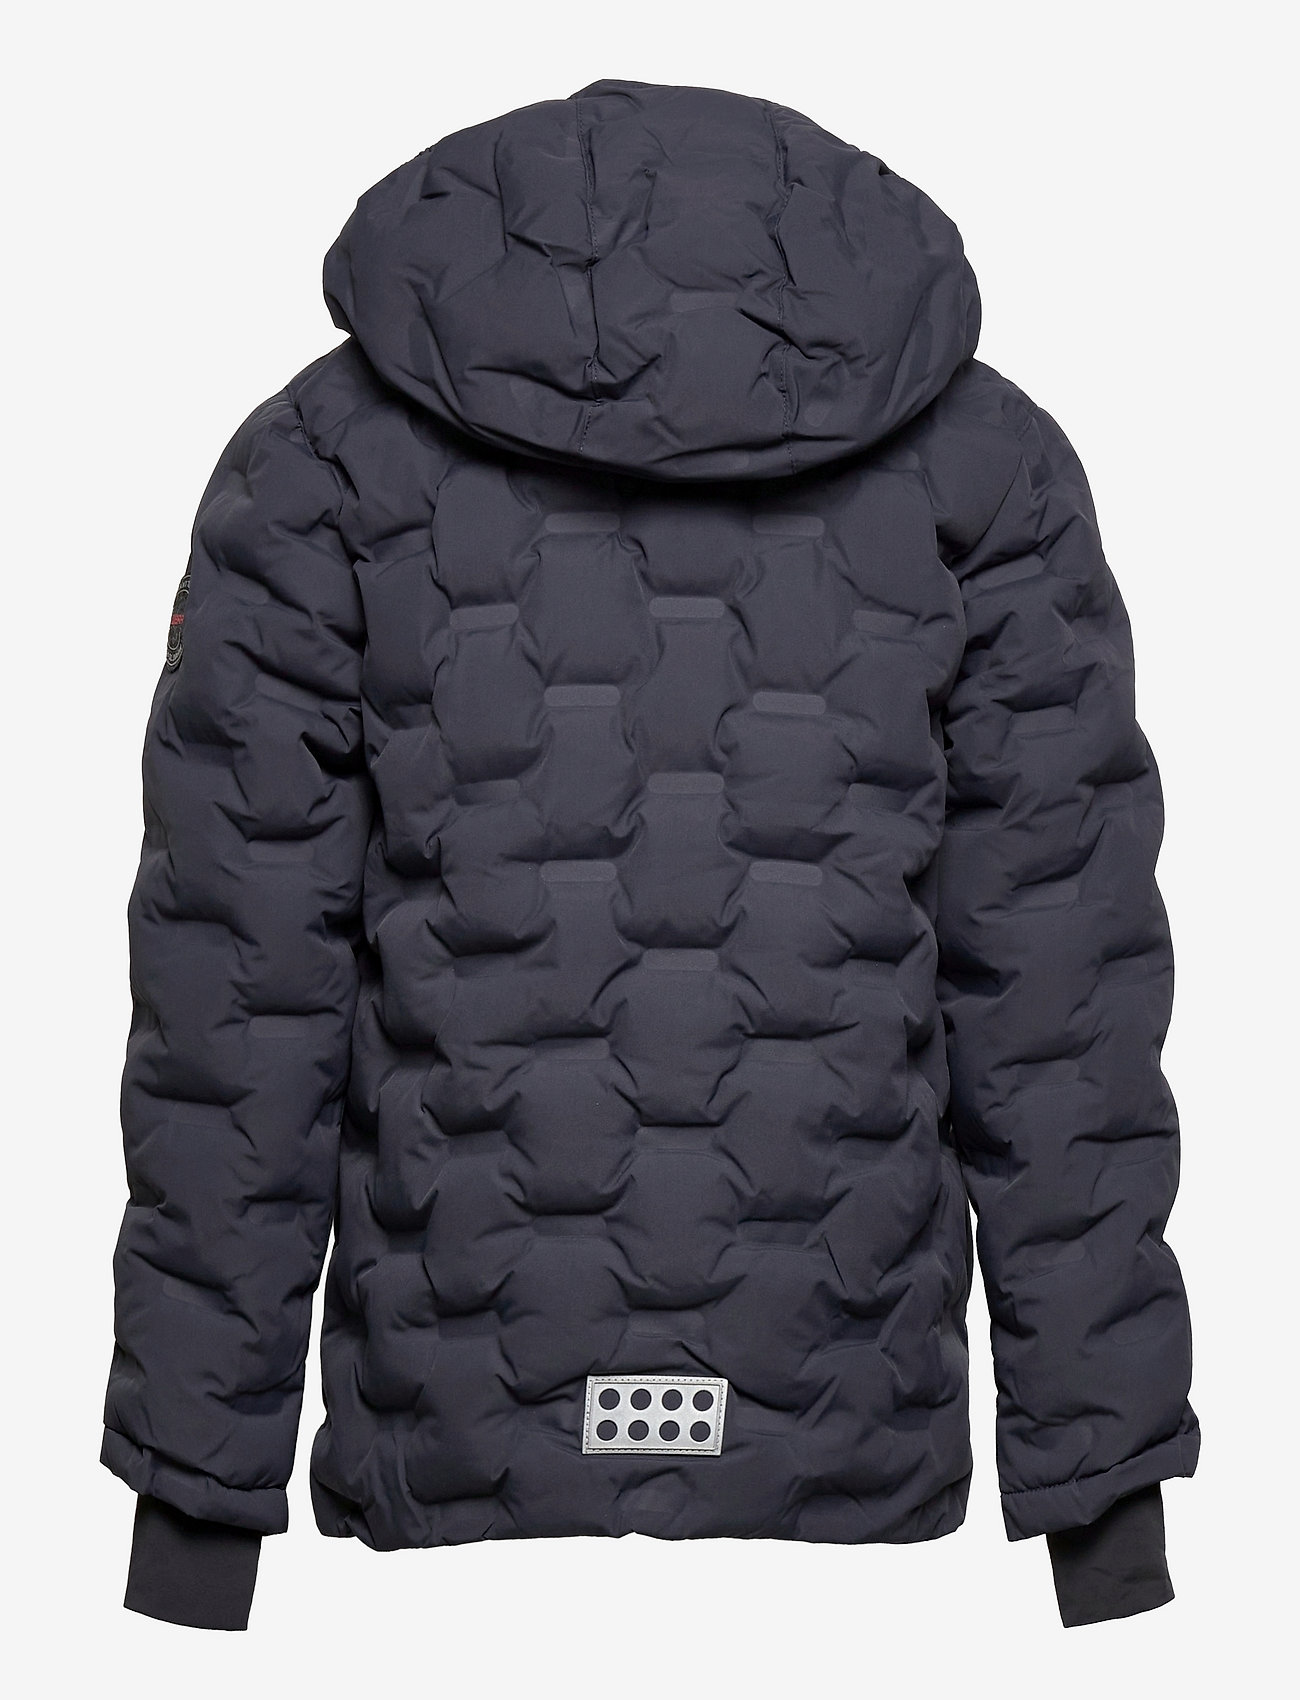 LEGO kidswear - LWJIPE 706 - JACKET - winter jackets - dark grey - 1